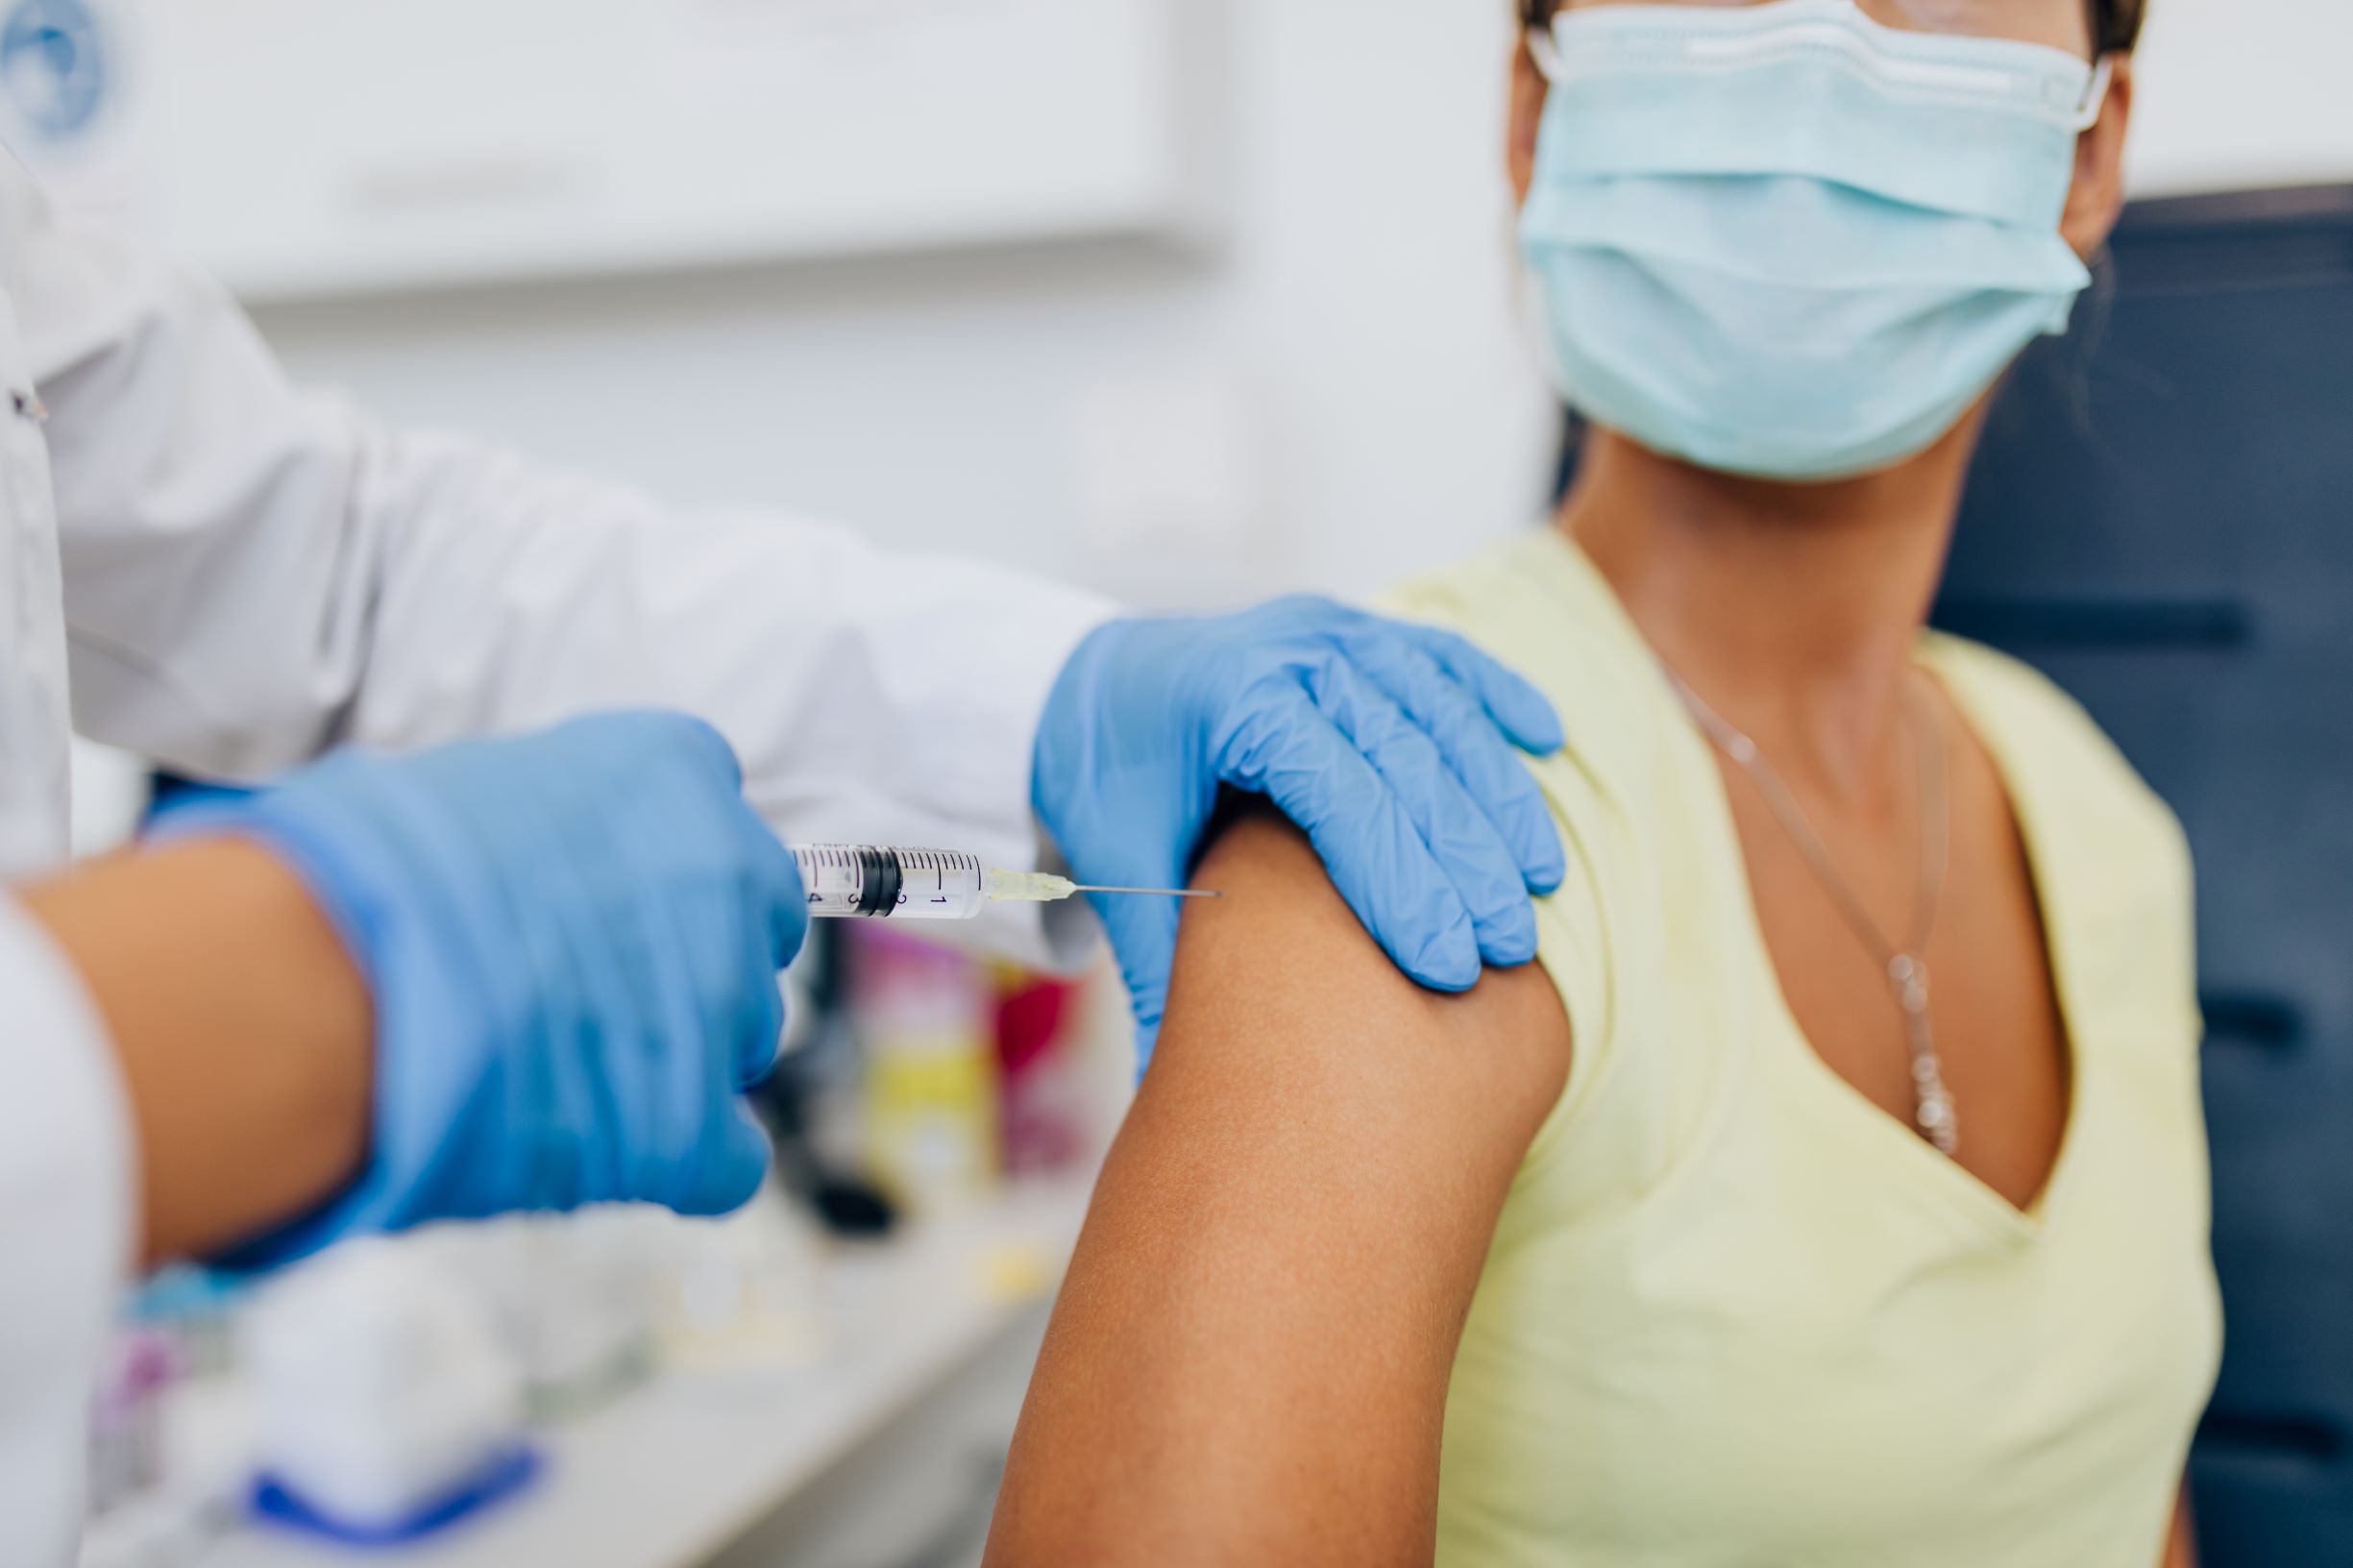 Υποχρεωτικοί εμβολιασμοί – Πελώνη: Την επόμενη εβδομάδα ανακοινώσεις για συγκεκριμένες επαγγελματικές ομάδες